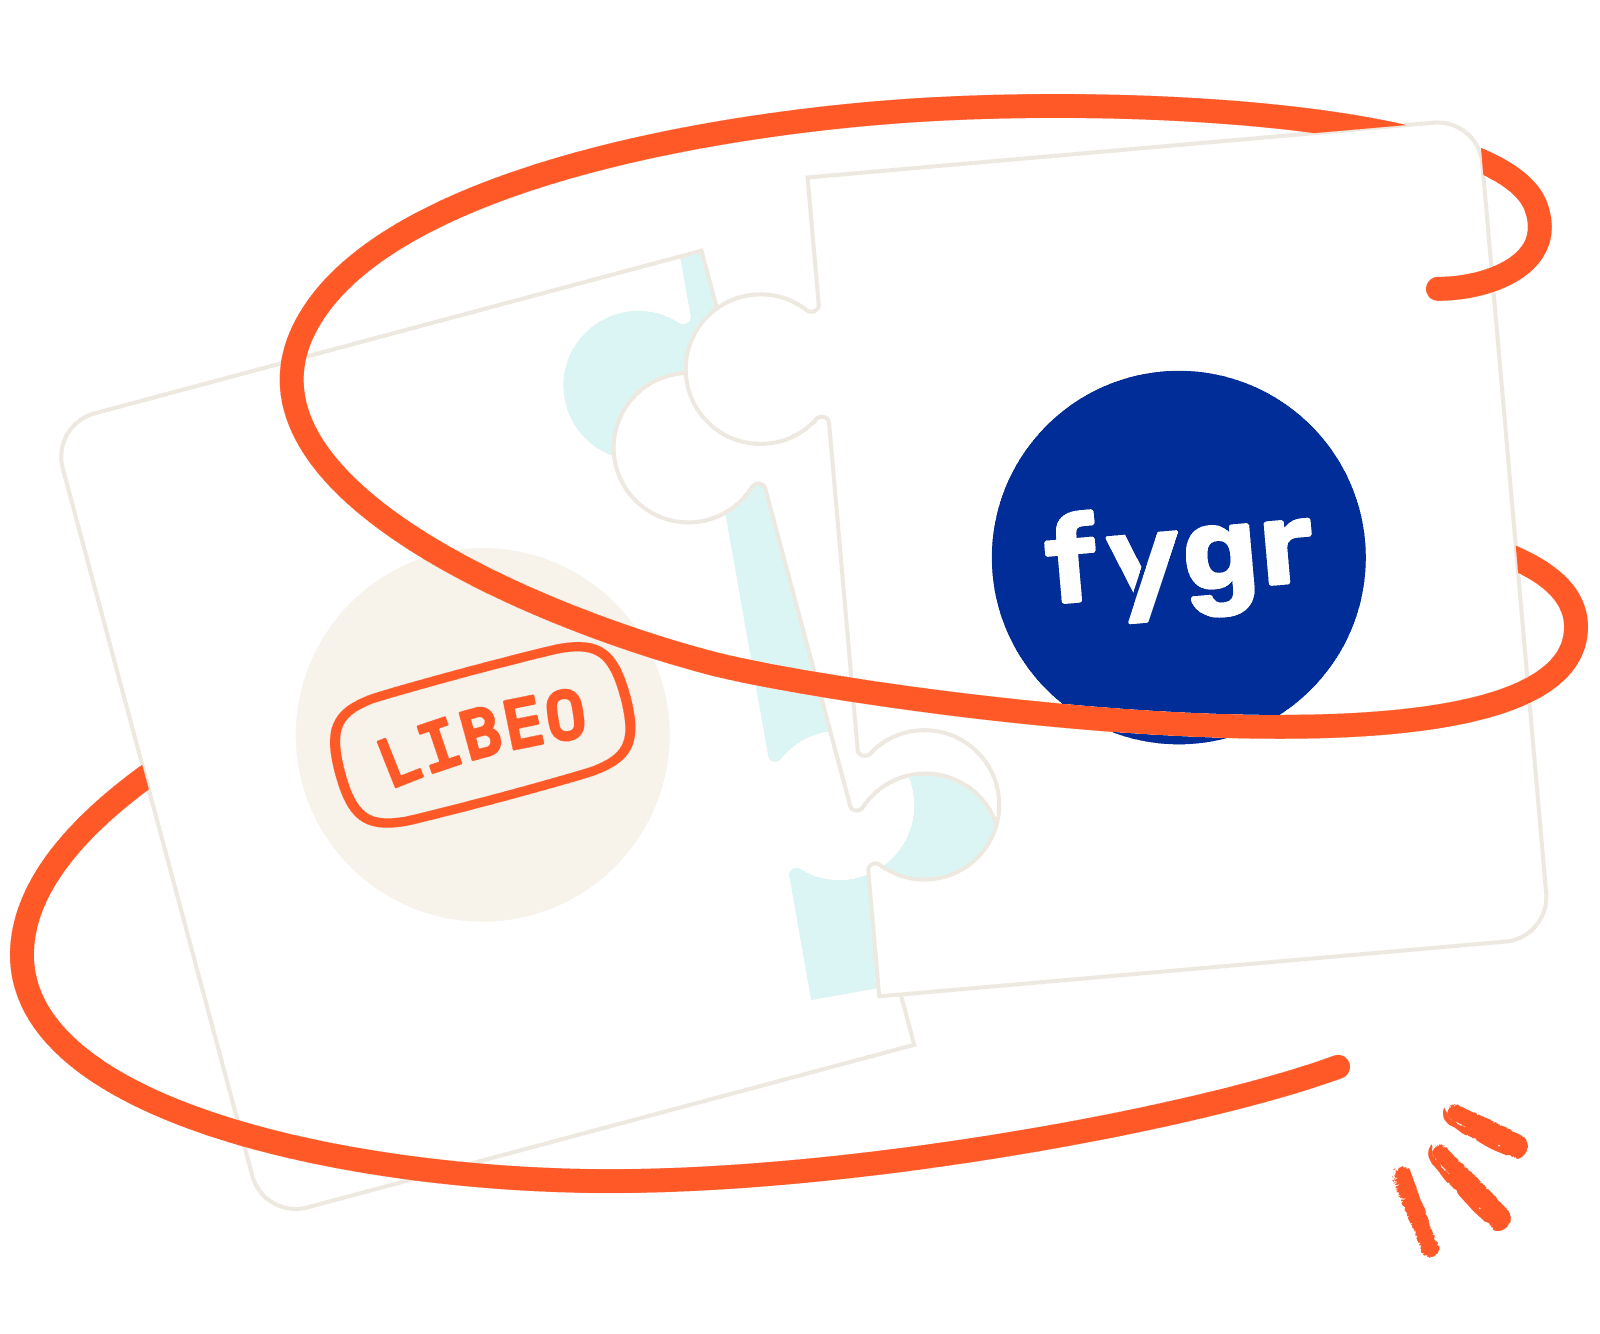 Libeo x Fygr logo